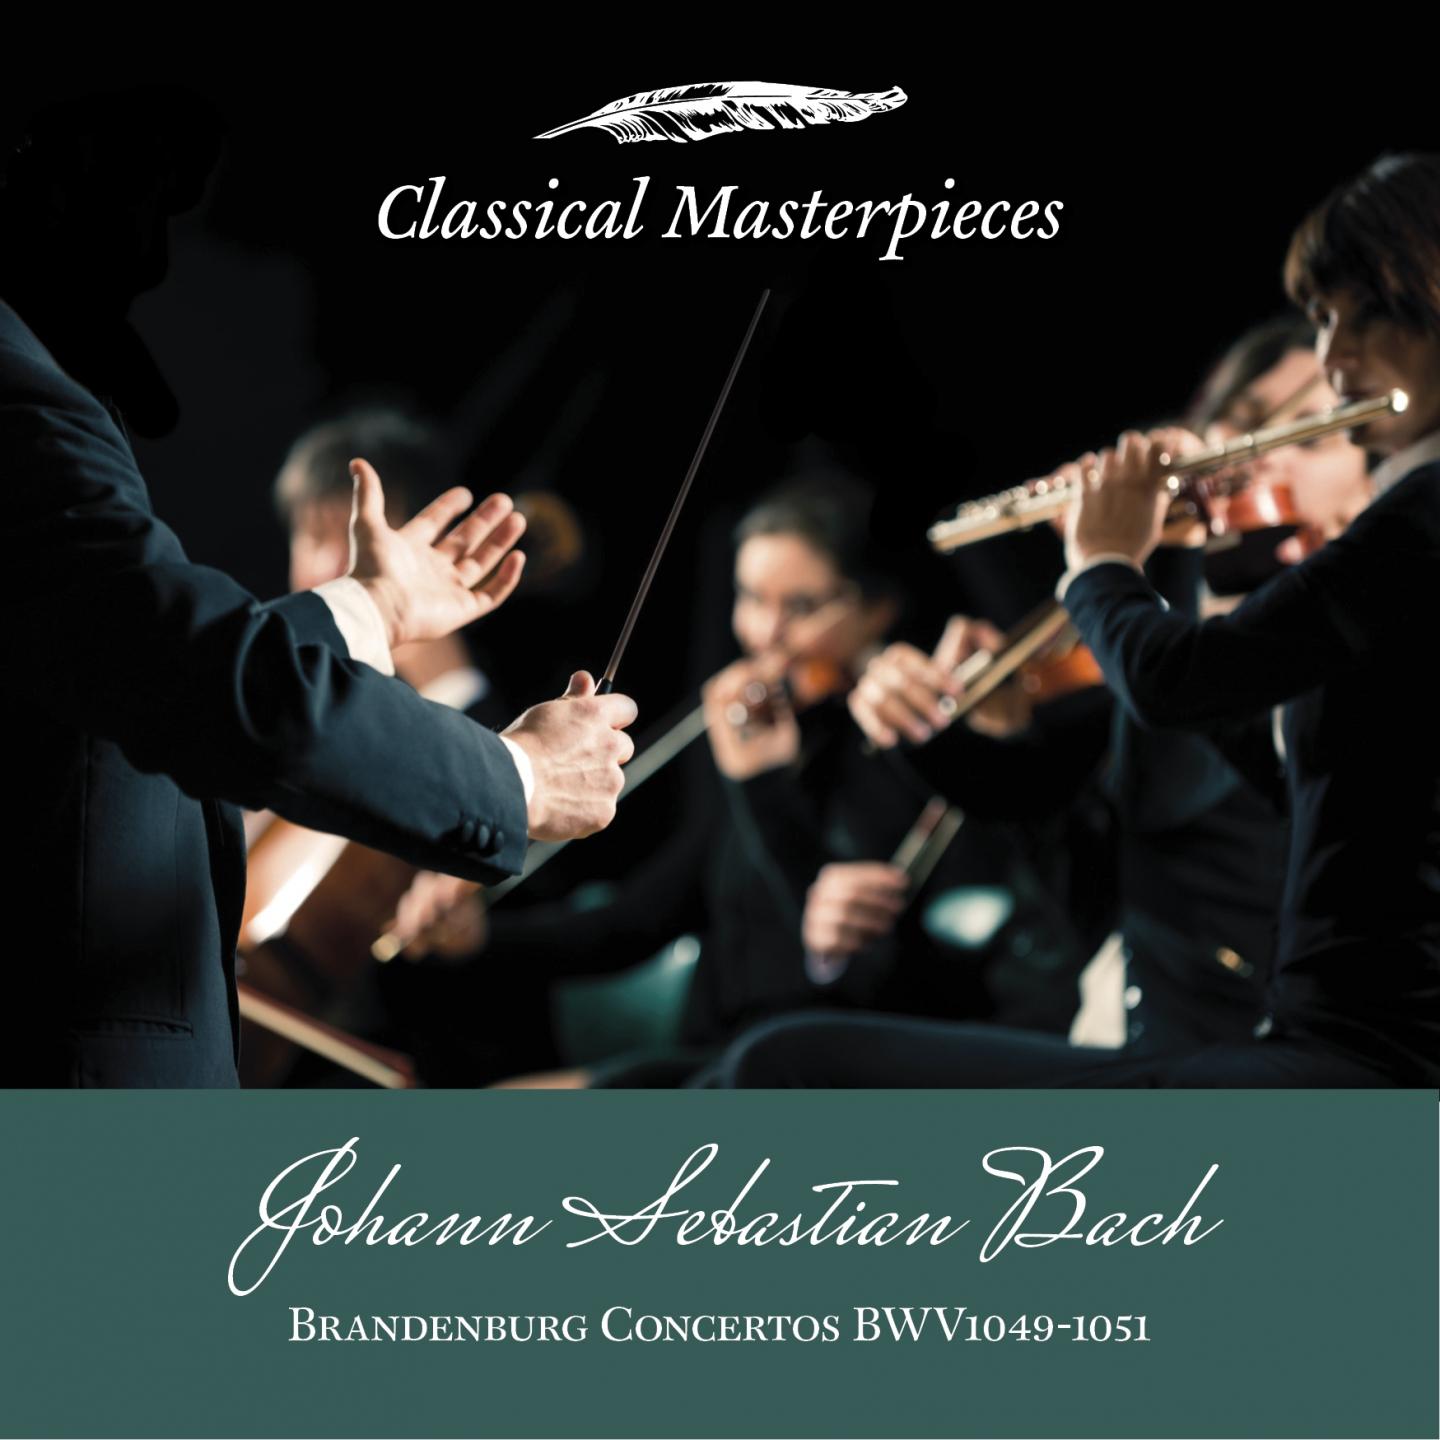 Brandenburg Concerto VI in B Flat Major, BWV1051: Allegro